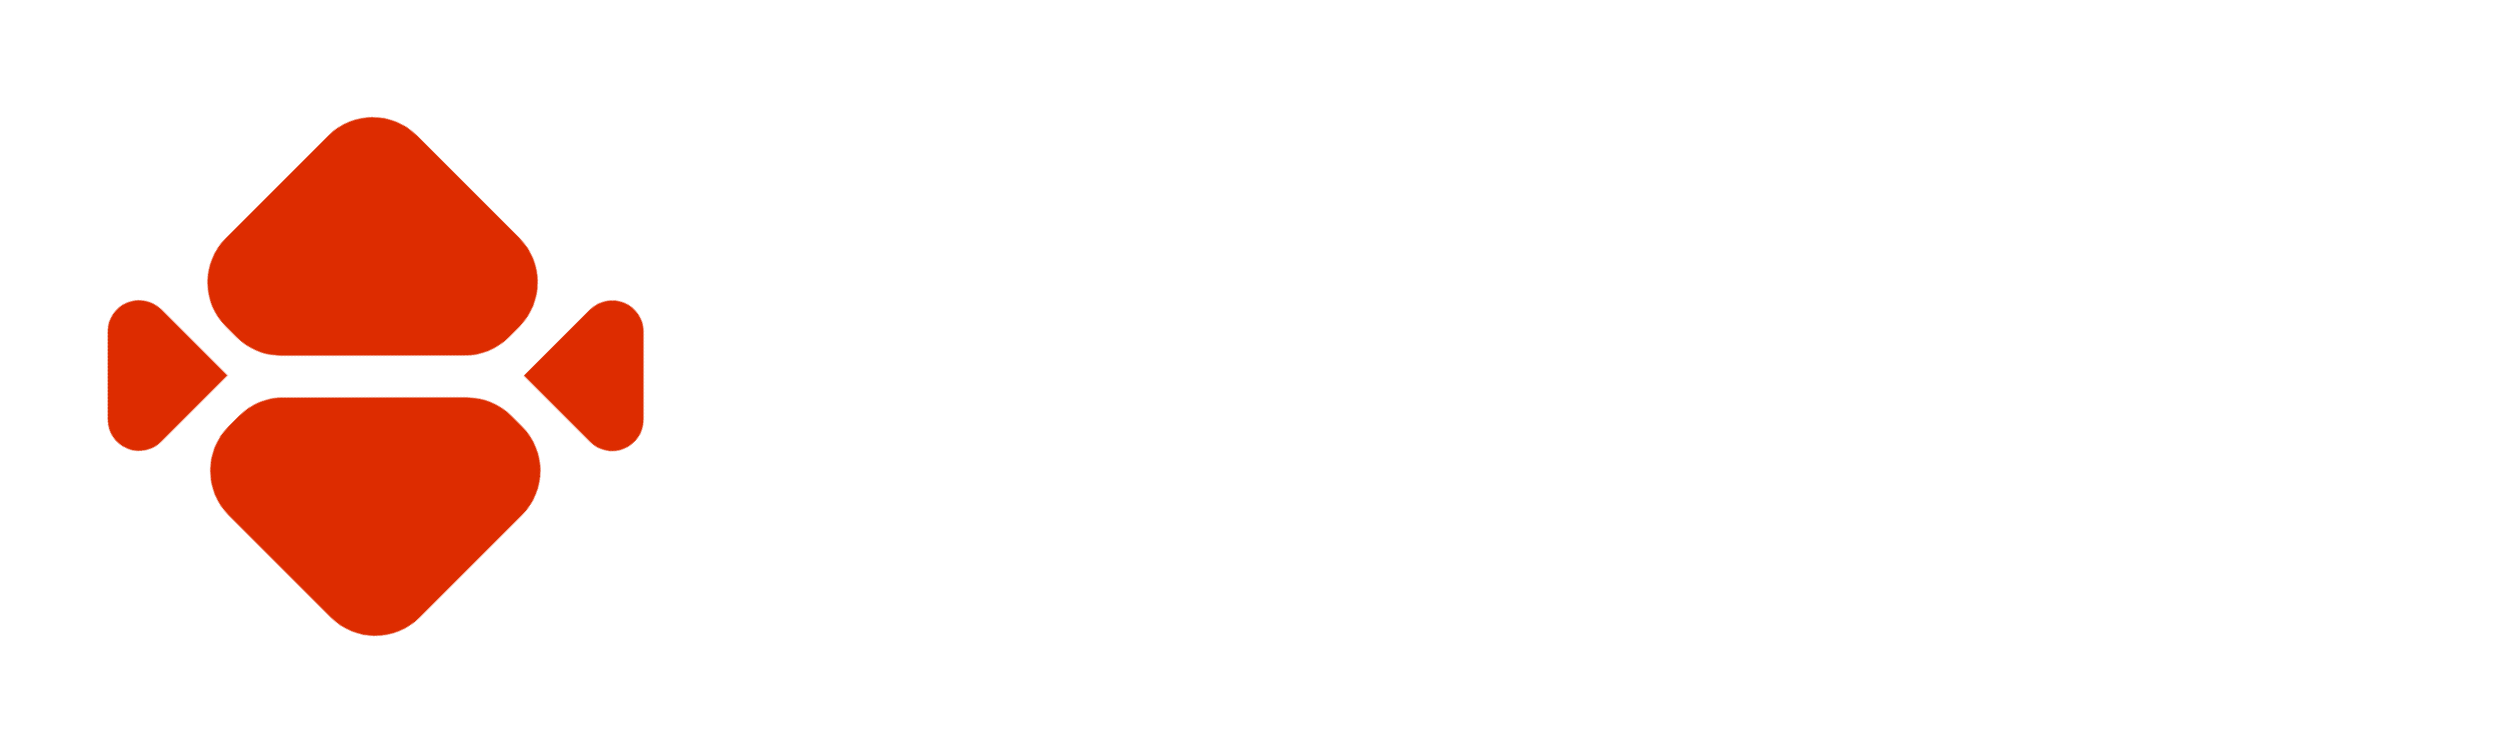 Honduras AG